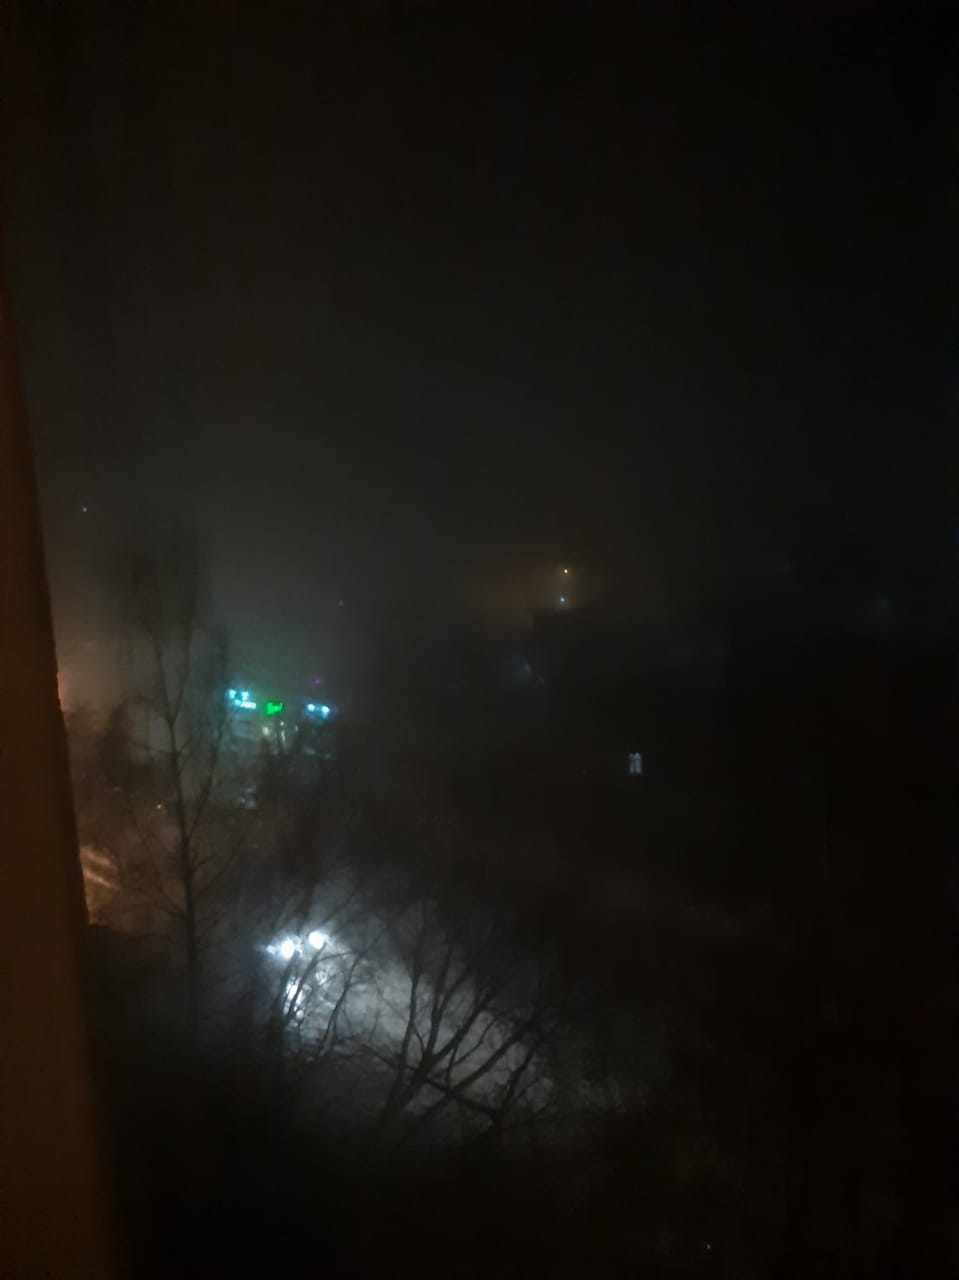 Так выглядит пейзаж за окном квартиры в Дзержинском районе